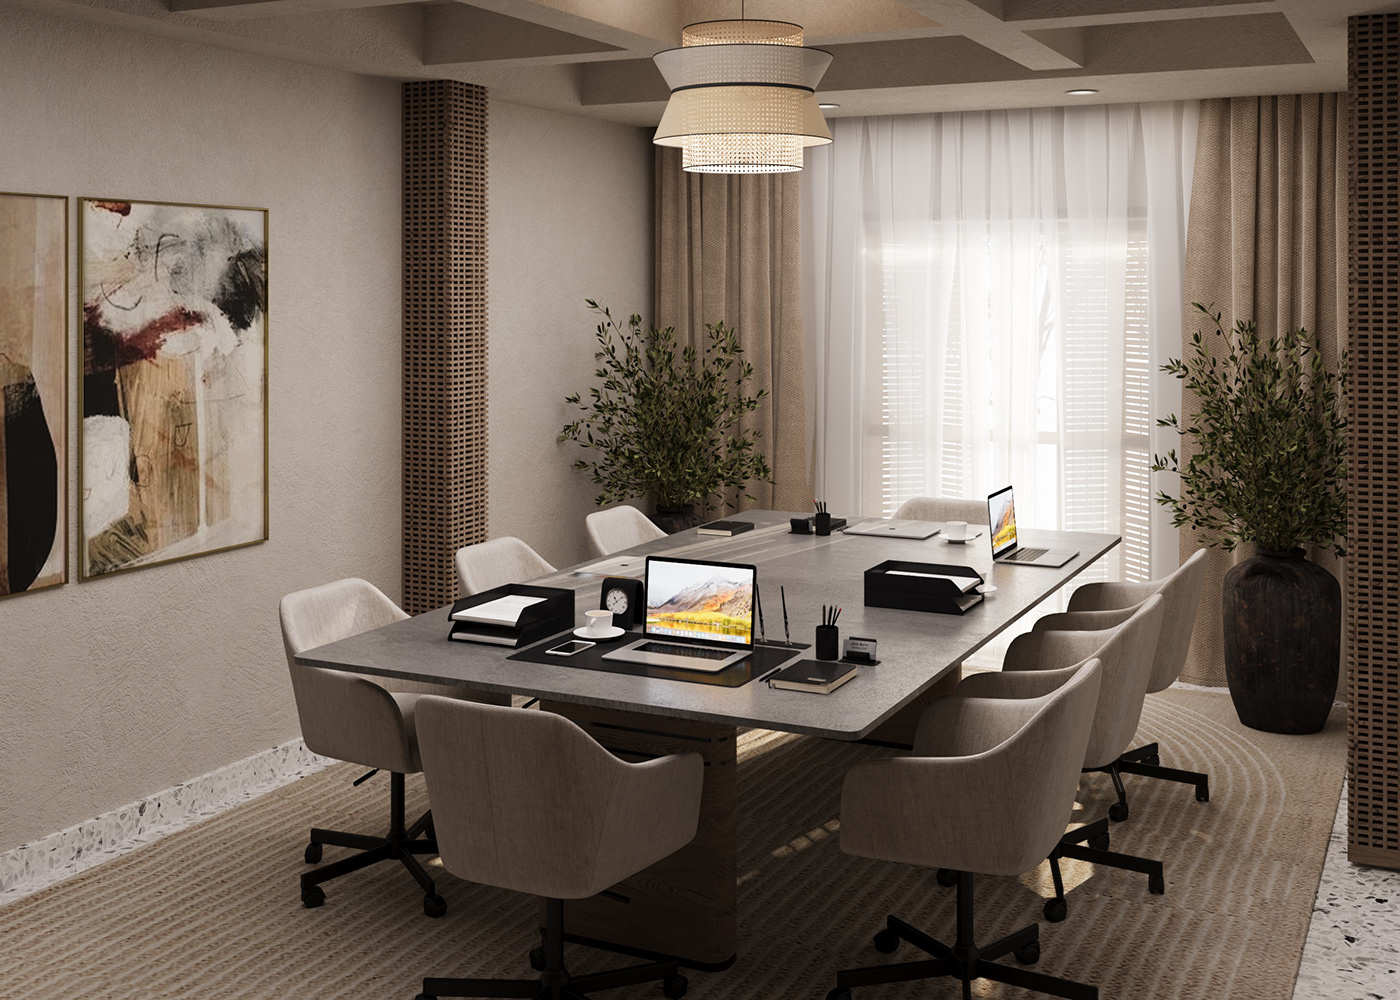 interiordesign visualization architecture interior design  Render 3ds max corona CGI 3D MeetingRoomDesign